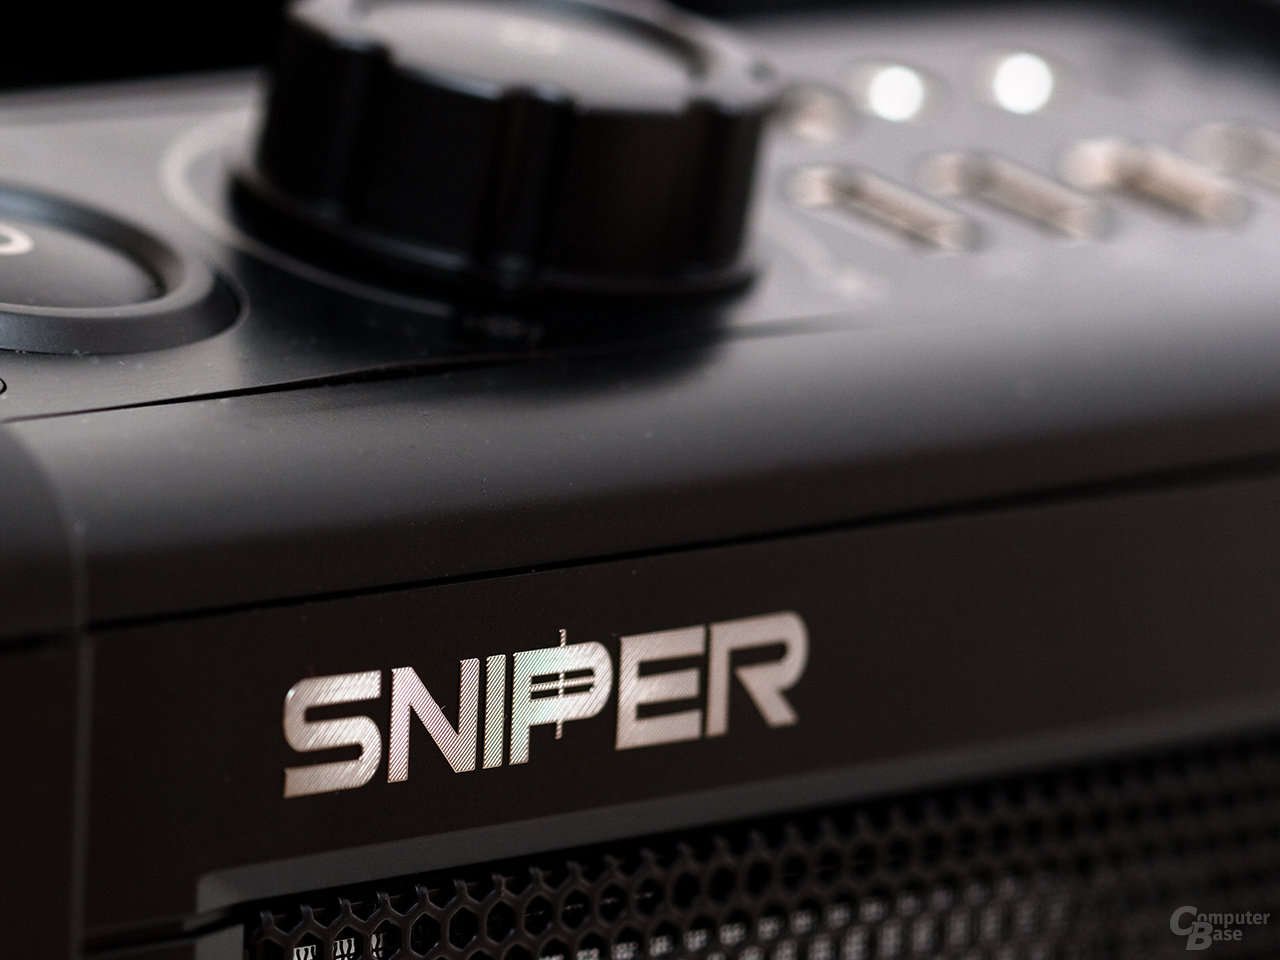 Cooler Master Storm Sniper – Emblem